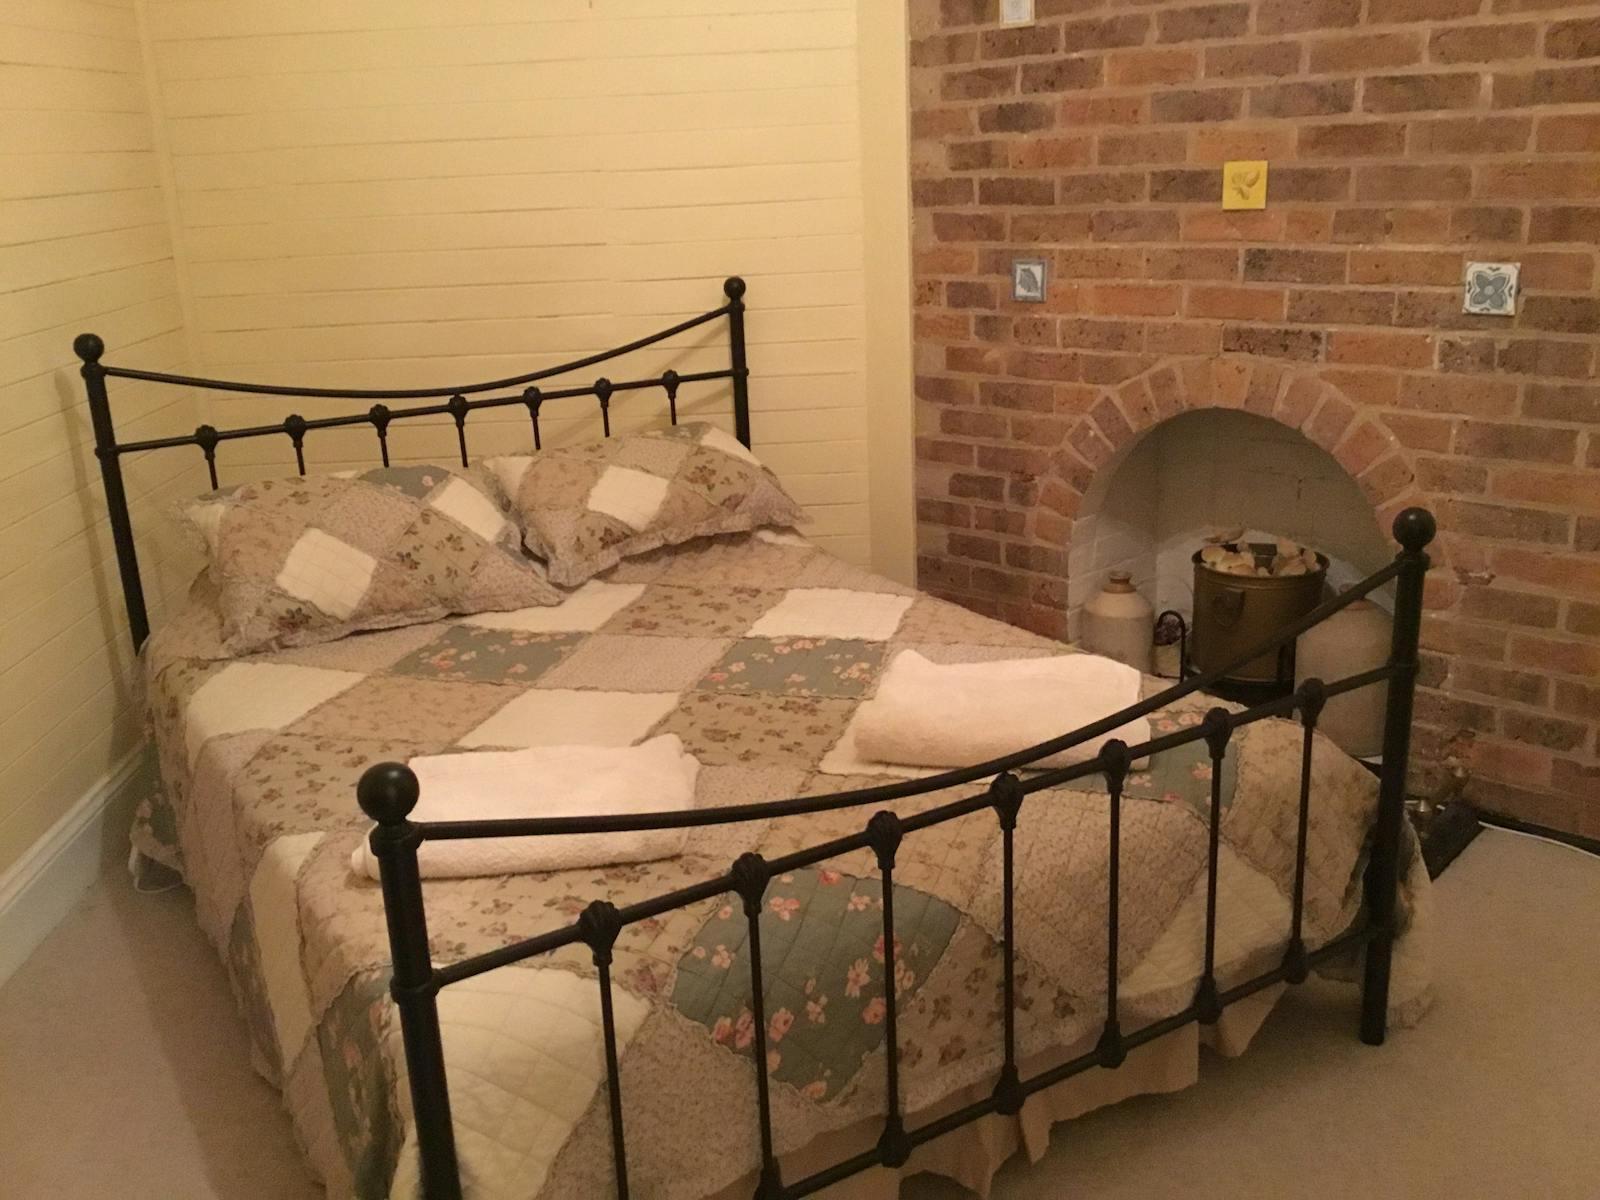 Venterfair Rural Retreat - Bedroom2 Queen